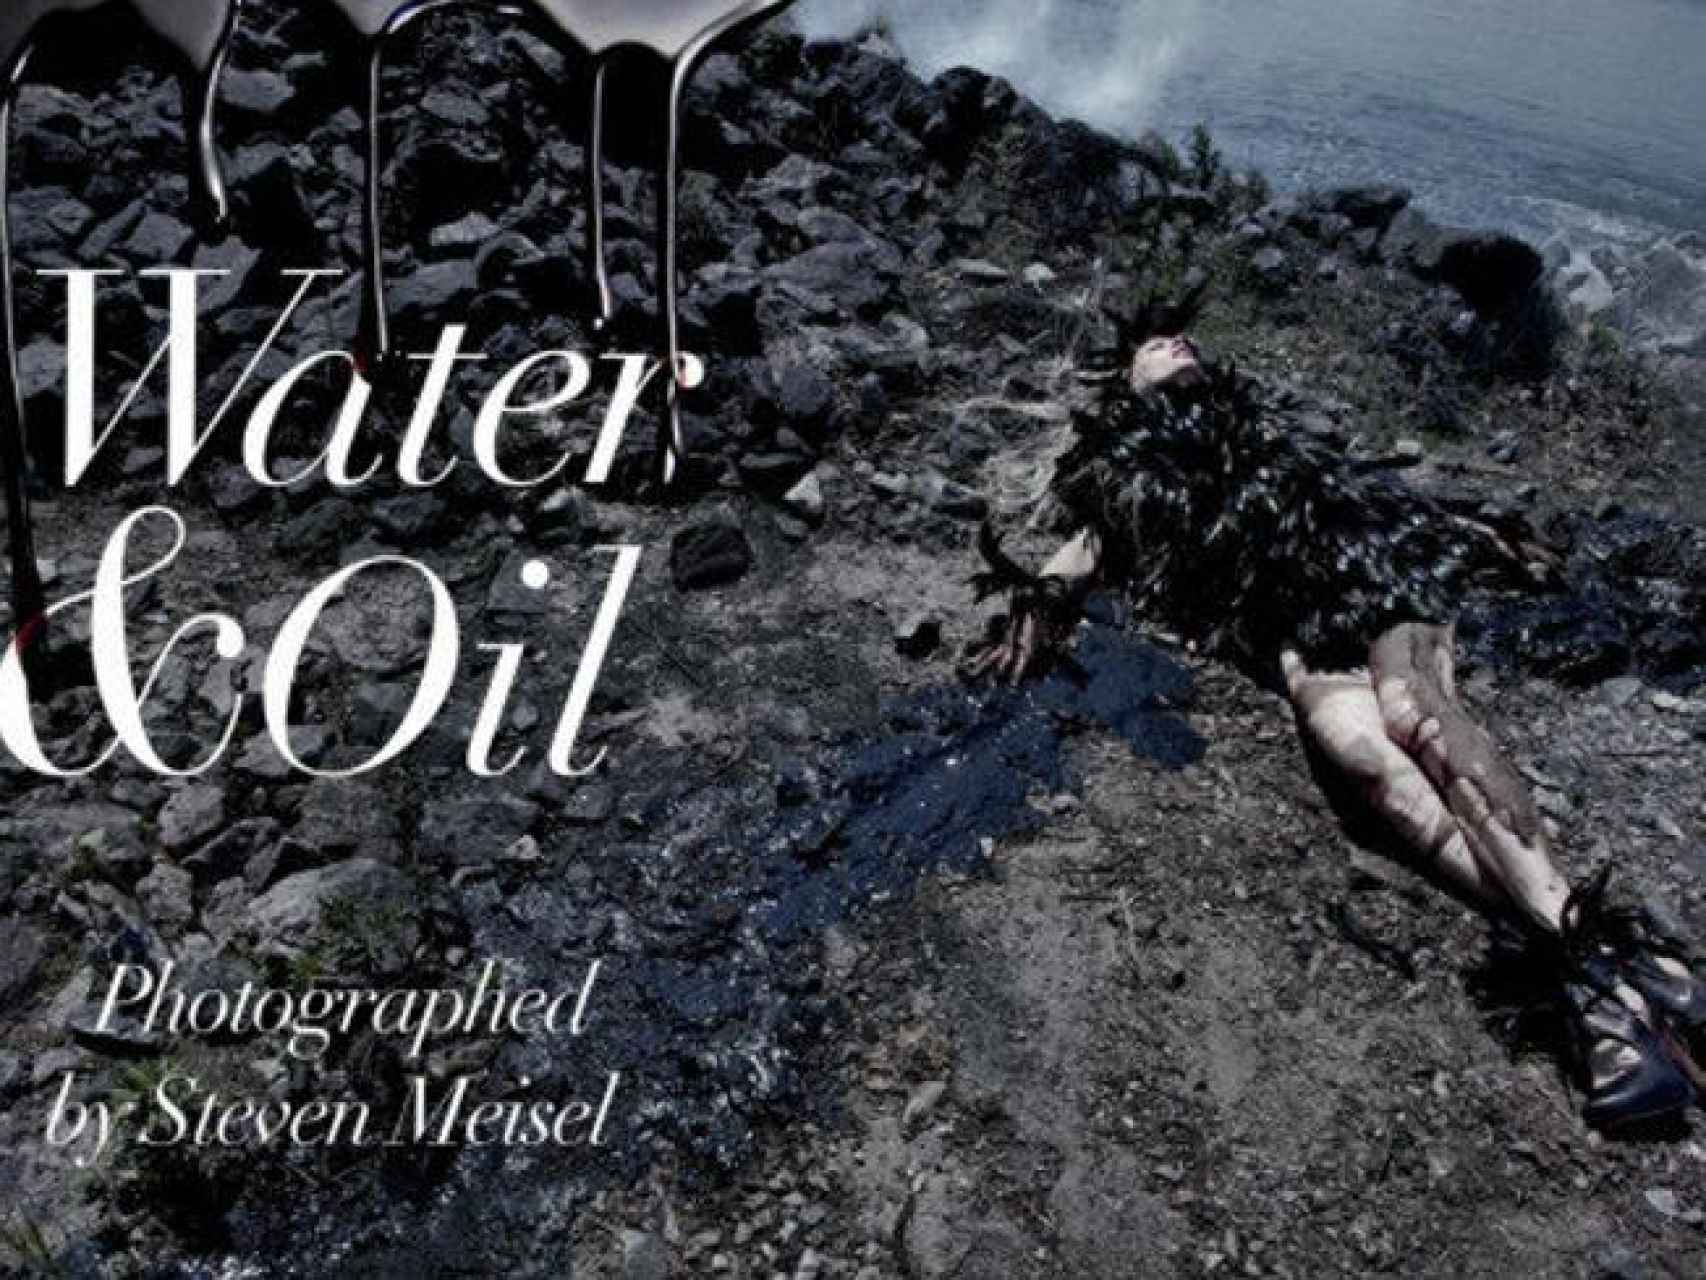 Reportaje sobre moda y vertidos en el mar, en el Vogue, de Steven Meisel.